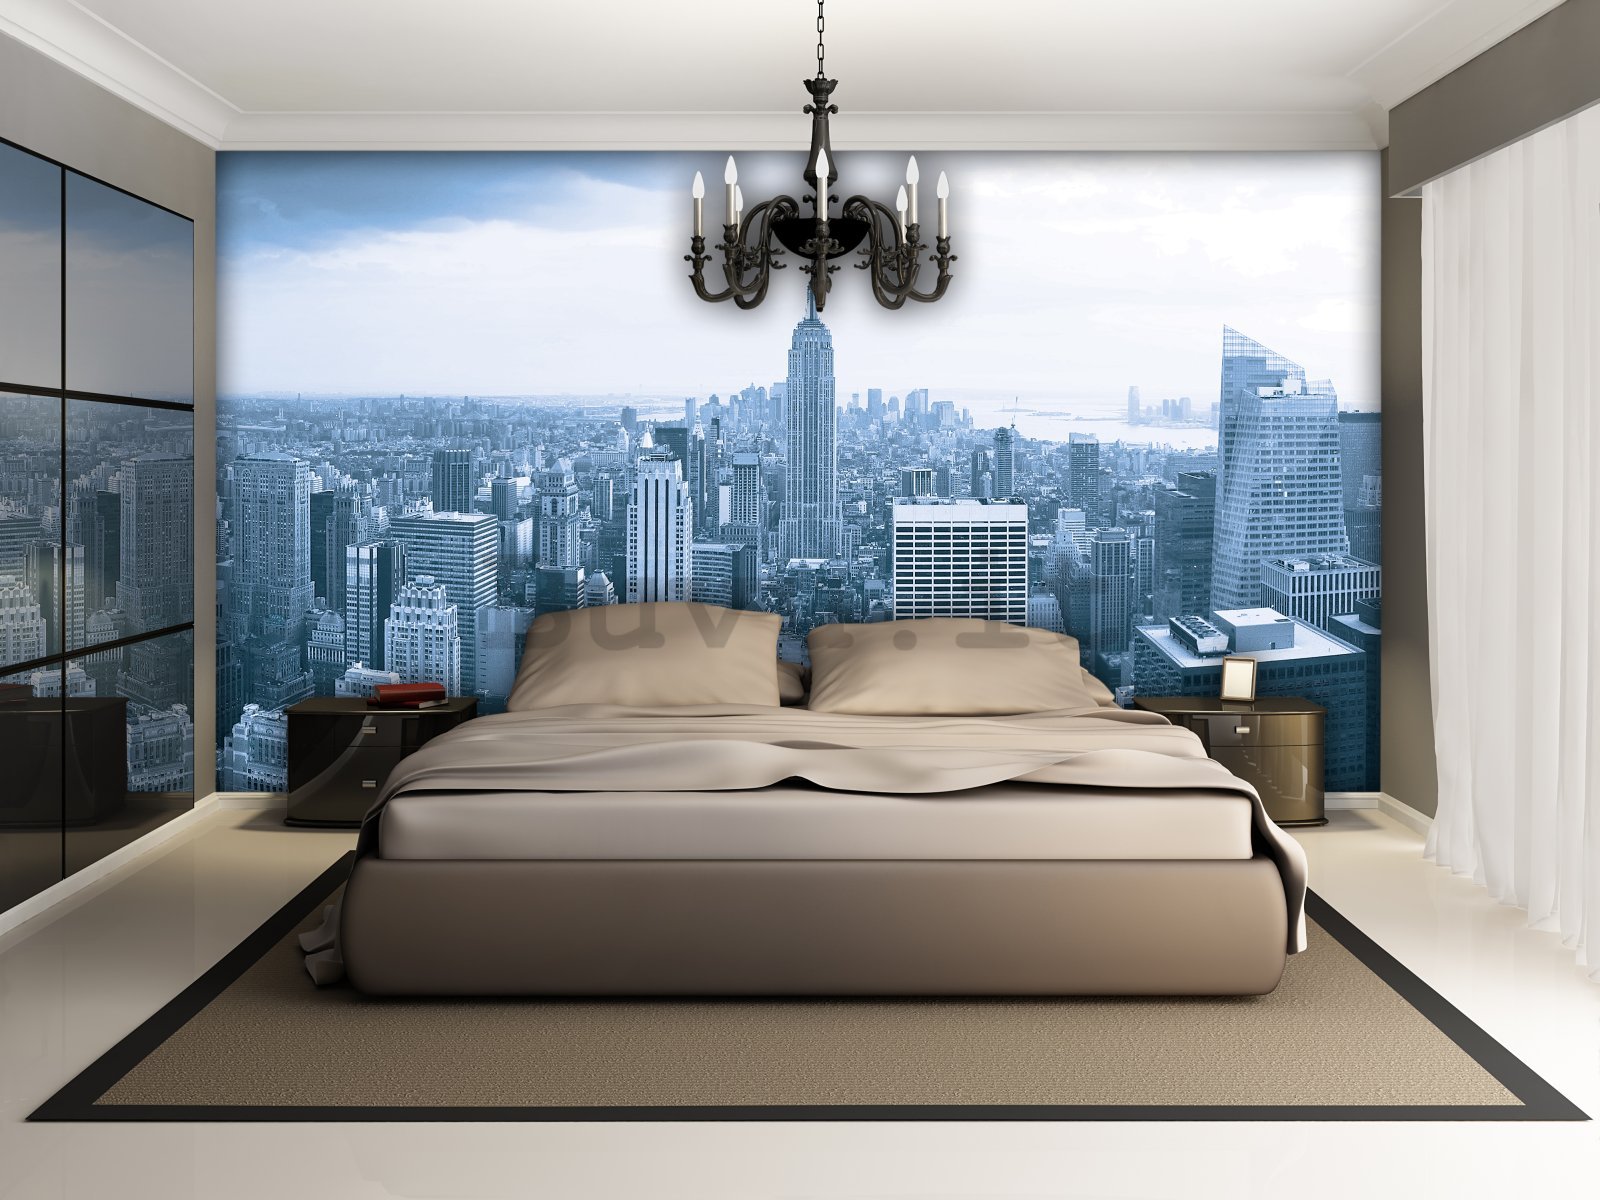 Fotomurale: Vista di Manhattan - 184x254 cm